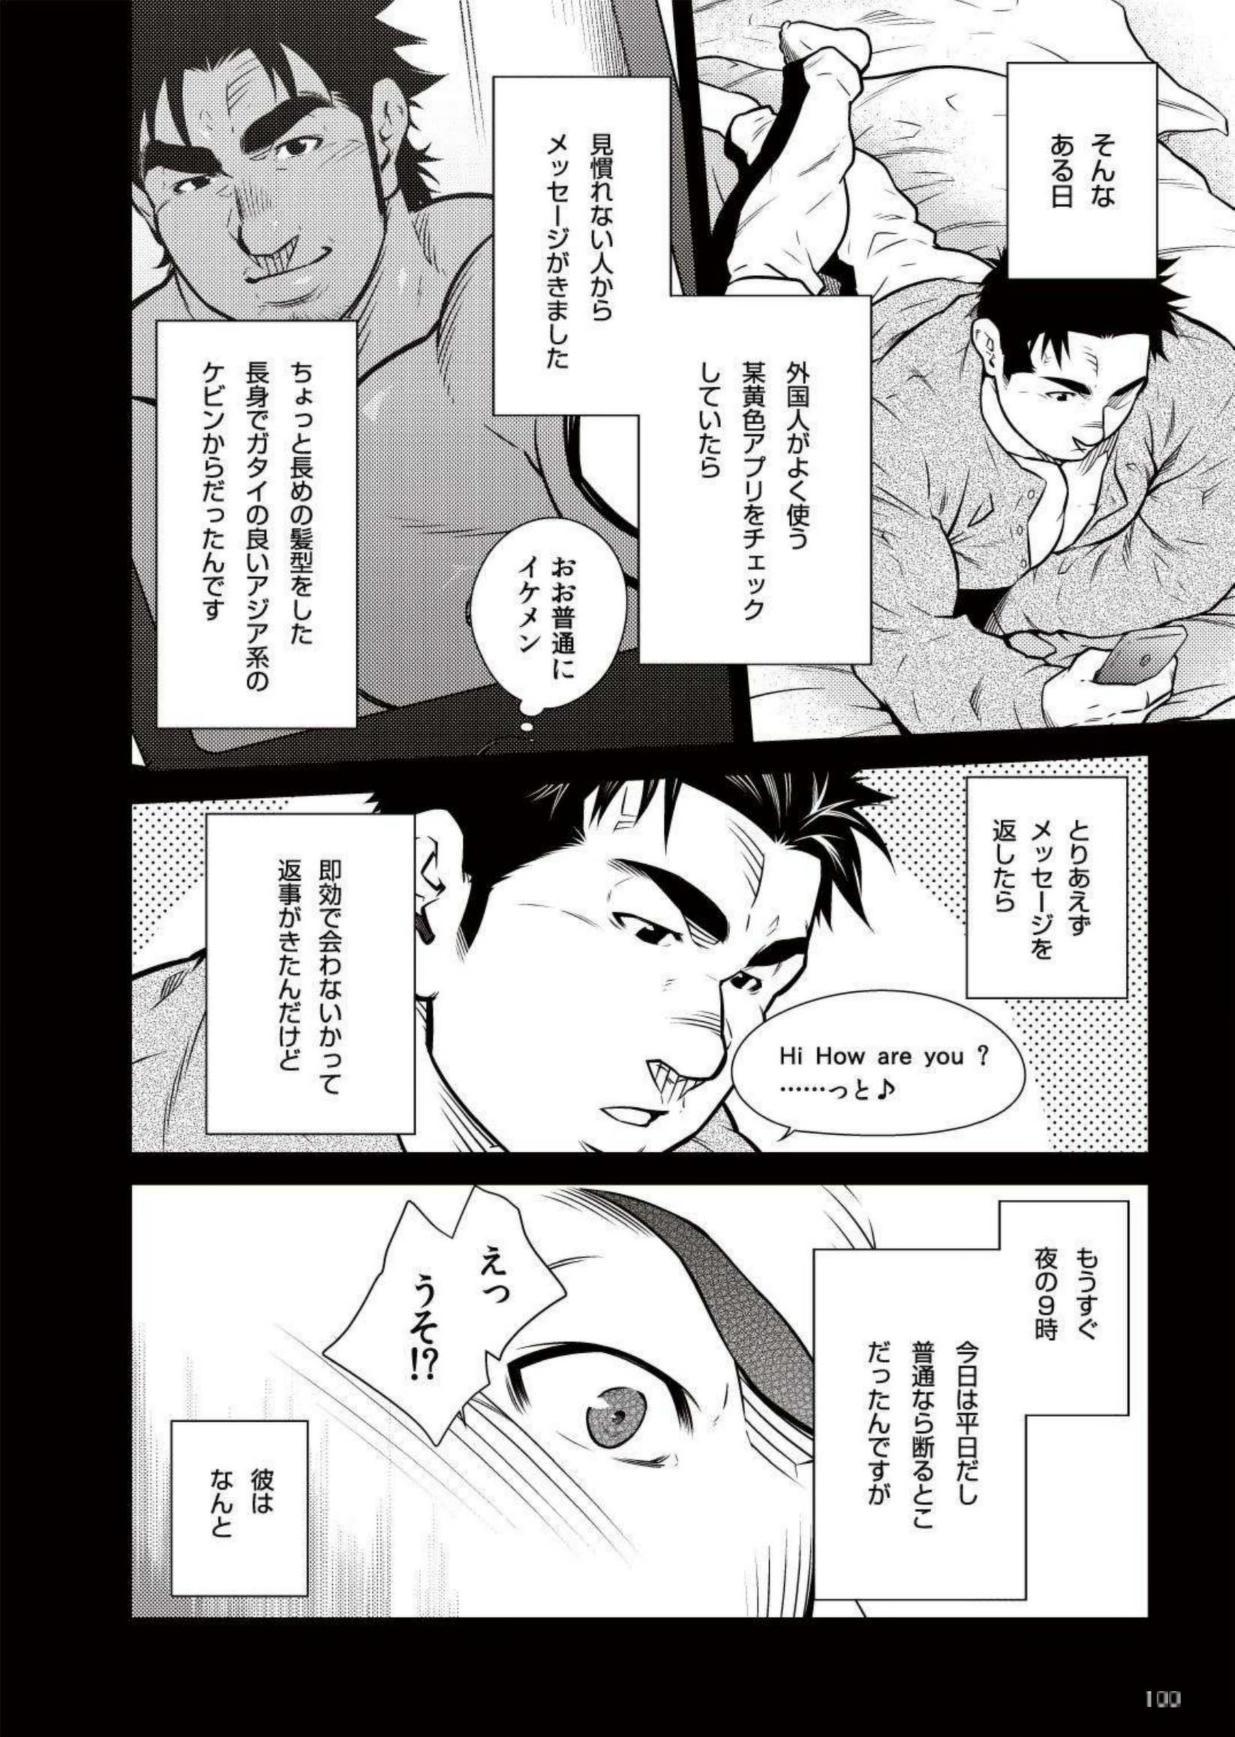 Office Terujirou - 晃次郎 - Badi Bʌ́di (バディ) 111 (May 2015) Amatuer - Page 2